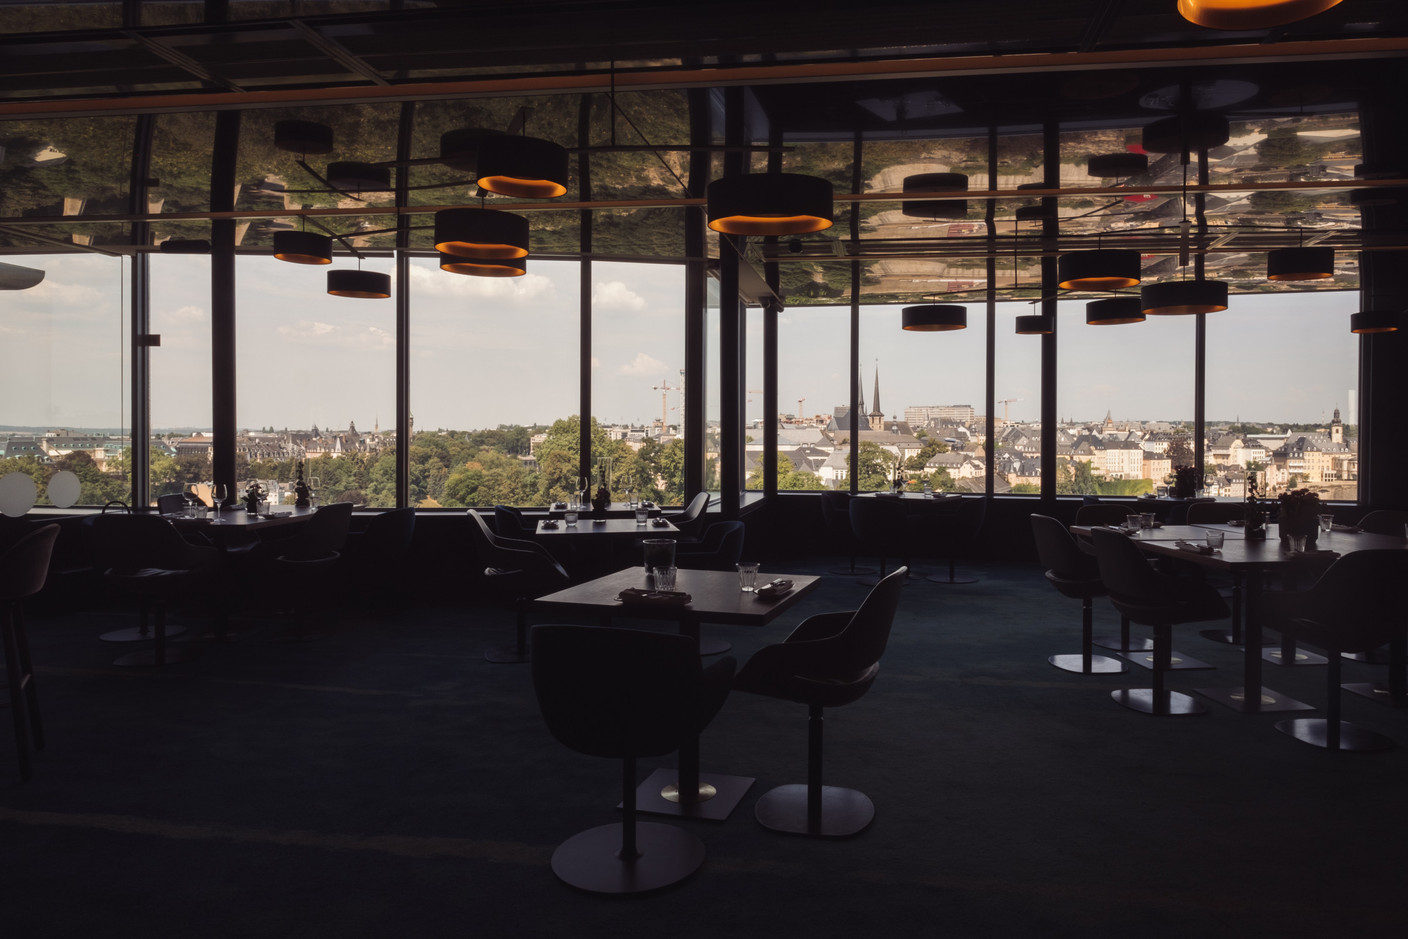 Le restaurant Mu offre une expérience 5 étoiles de la vue à l’assiette au Sofitel Le Grand Ducal. (Photo: Maison Moderne)